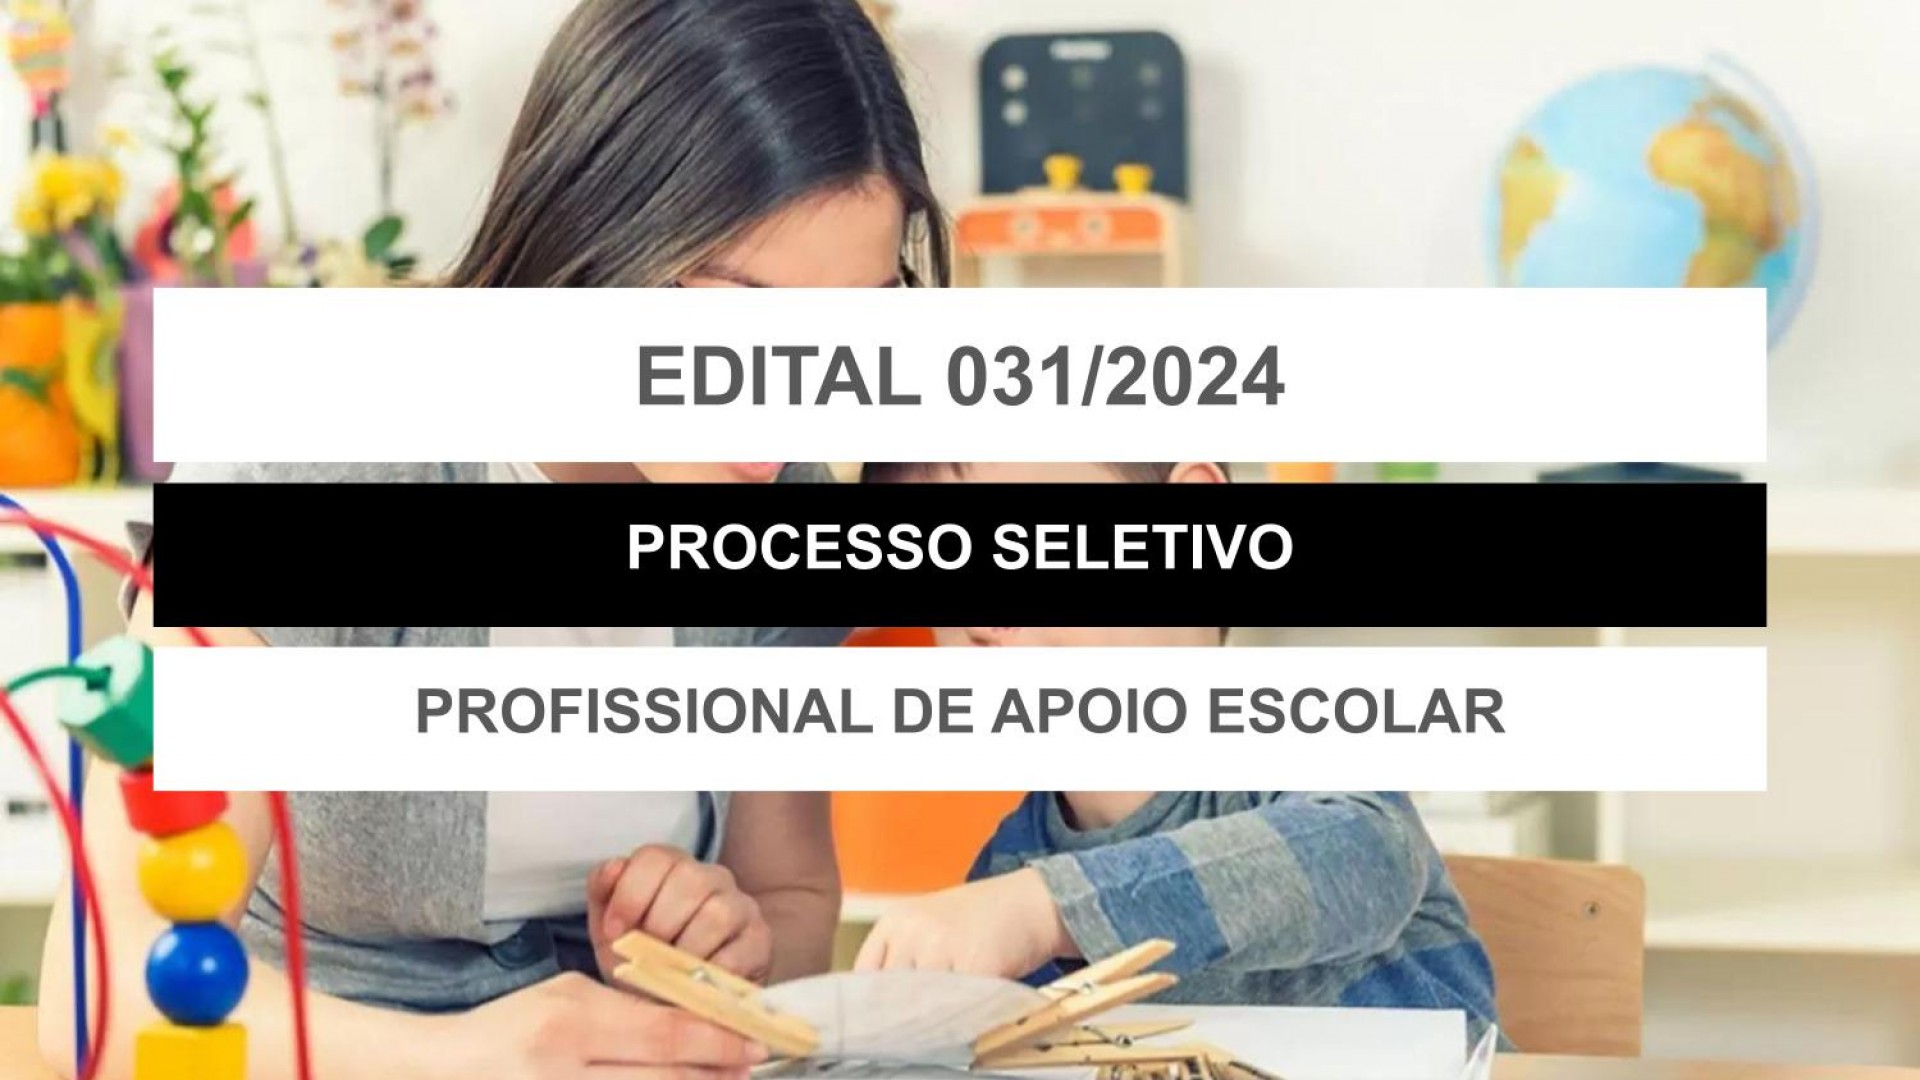 EDITAL EDUCAÇÃO Nº 031/2024 - PROFISSIONAL DE APOIO ESCOLAR